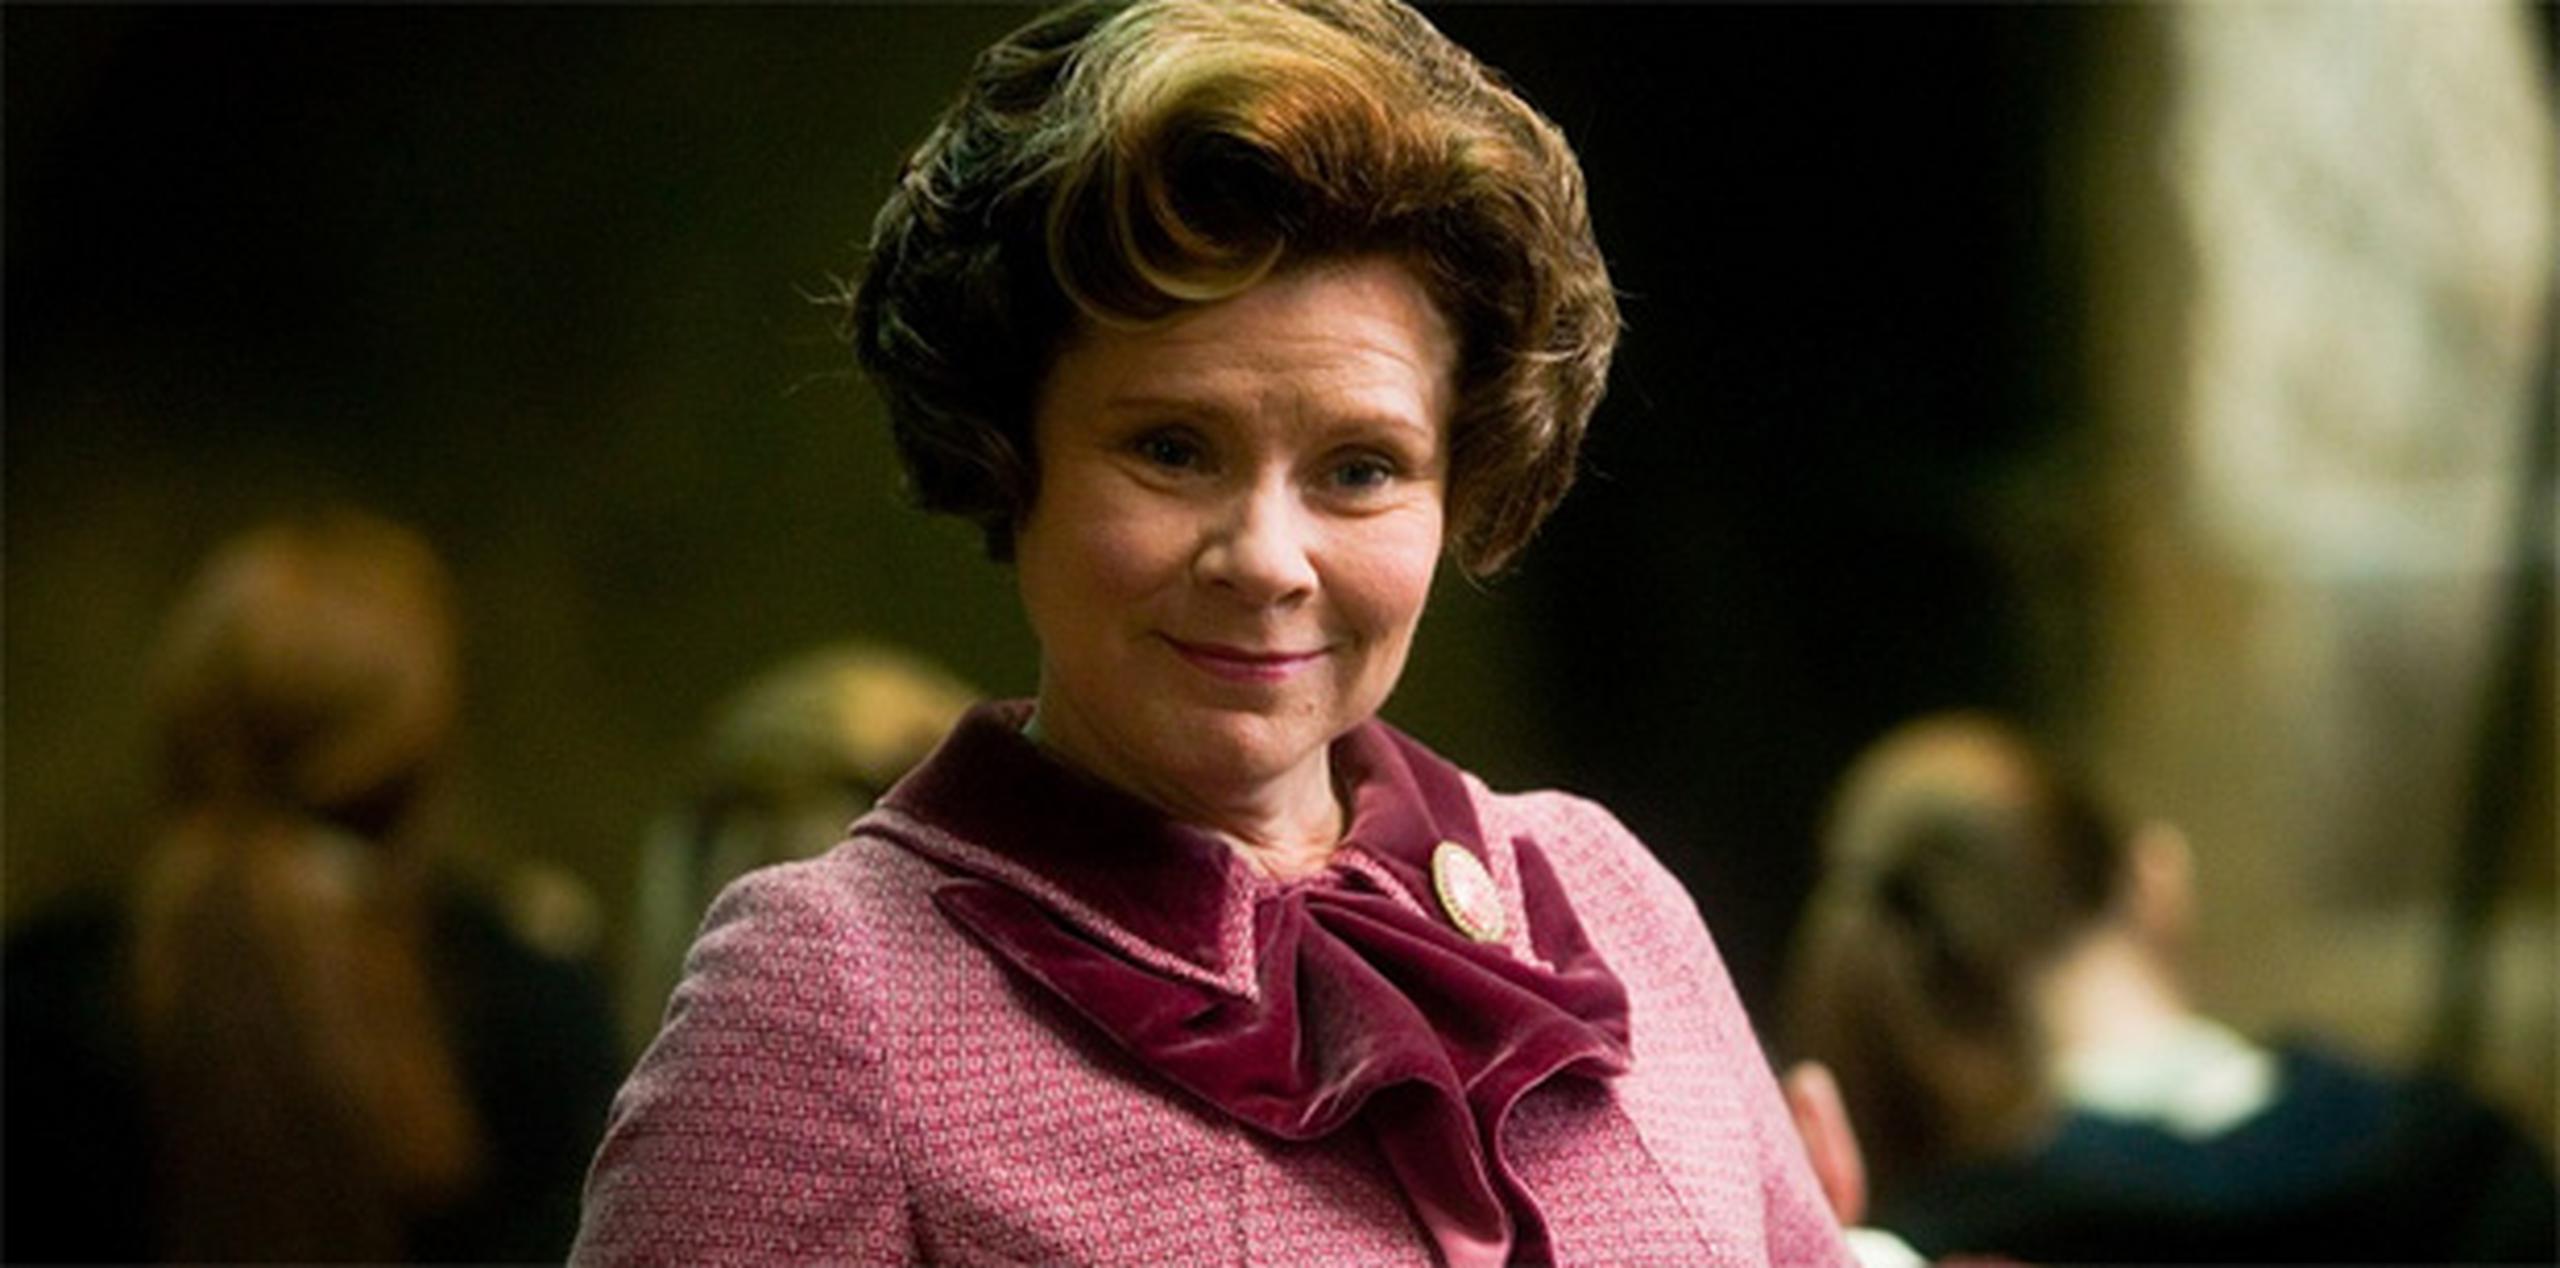 Imelda Staunton interpretó a "Dolores Umbridge" en las películas de Harry Potter.